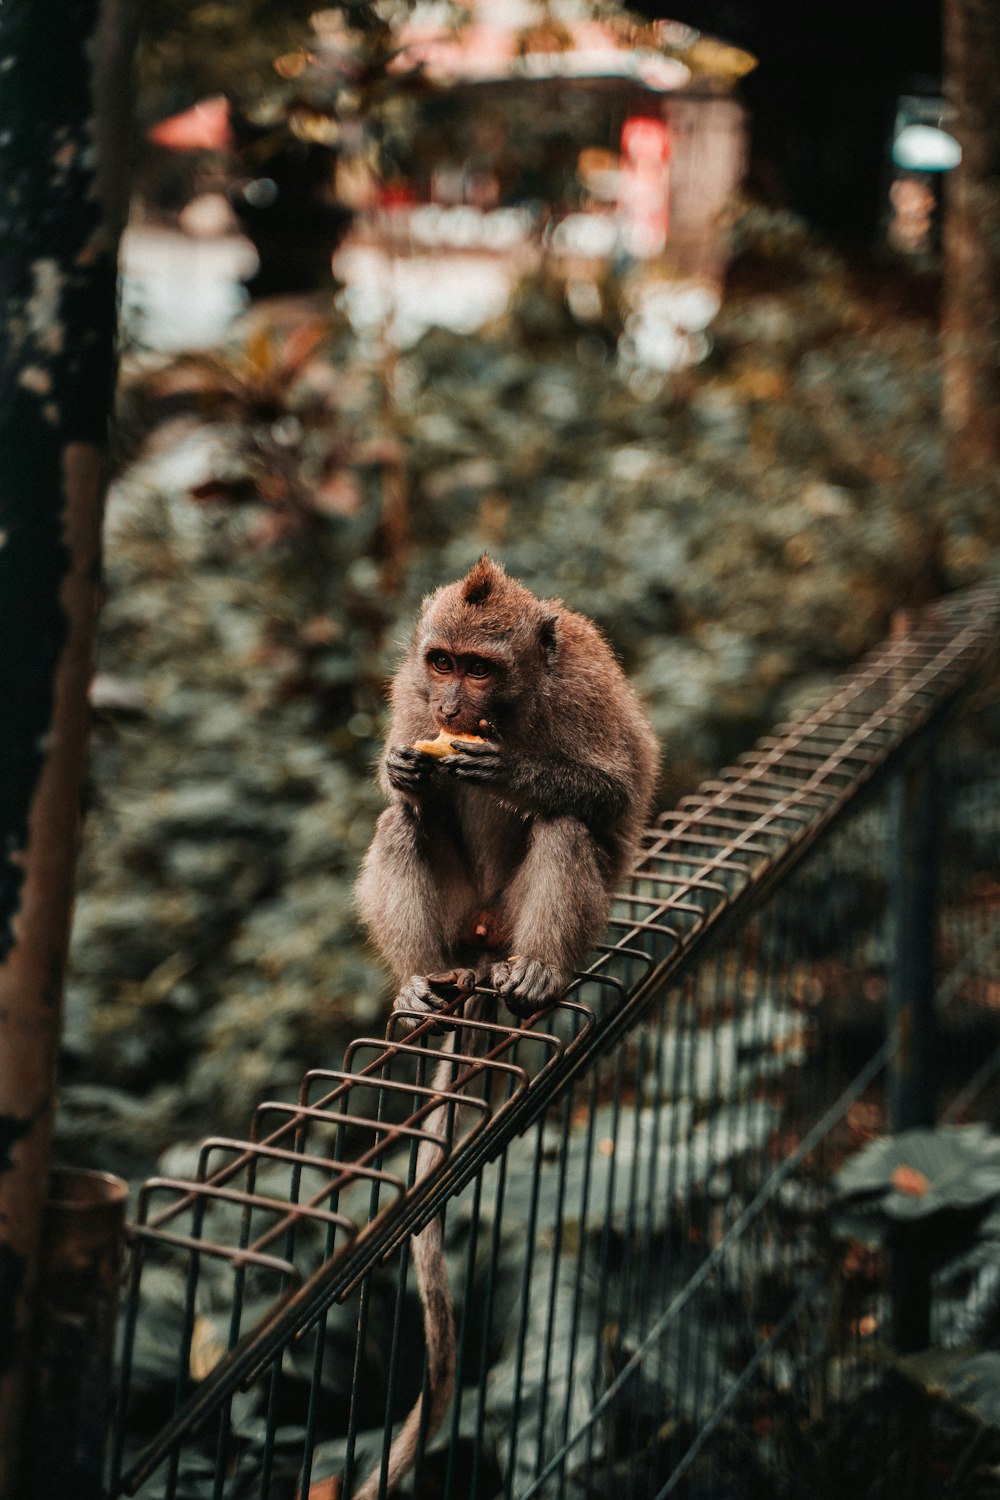 monkey eating on gray metal frame during daytime